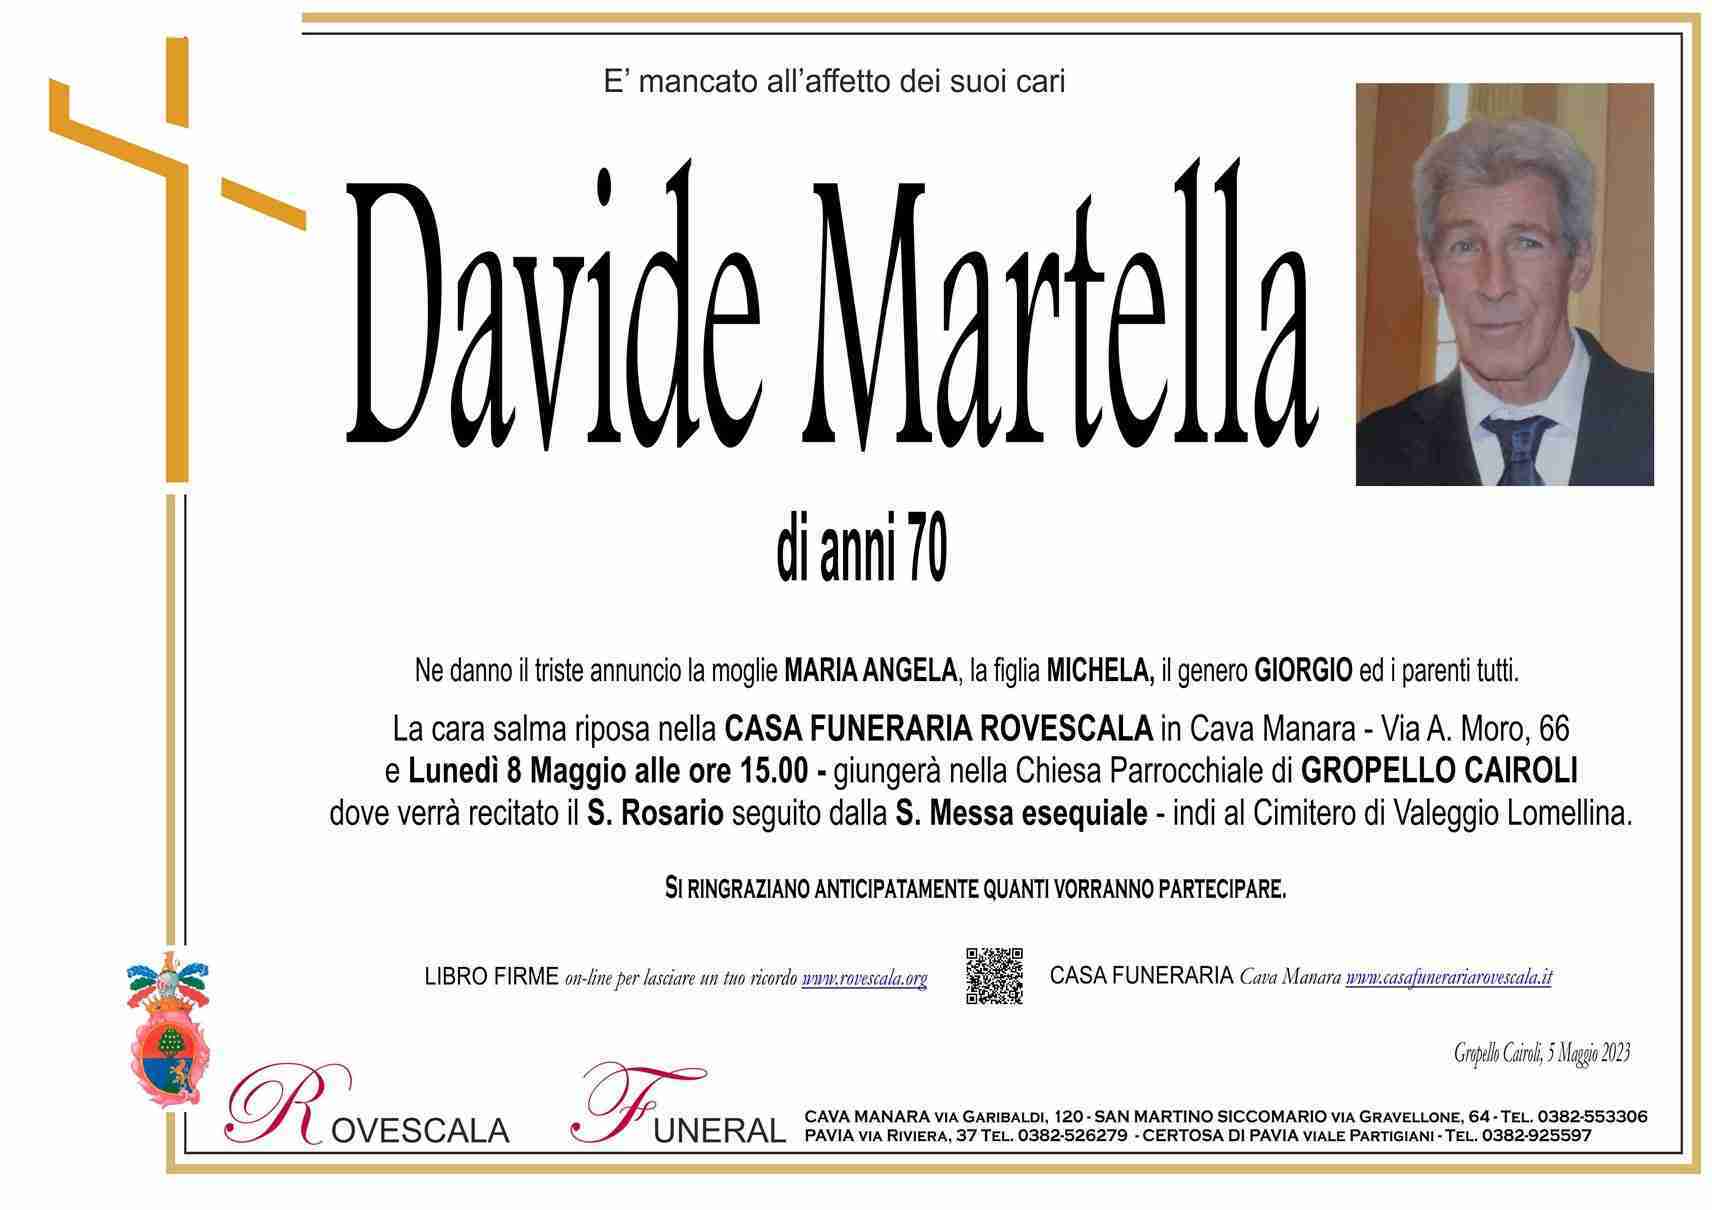 Davide Martella